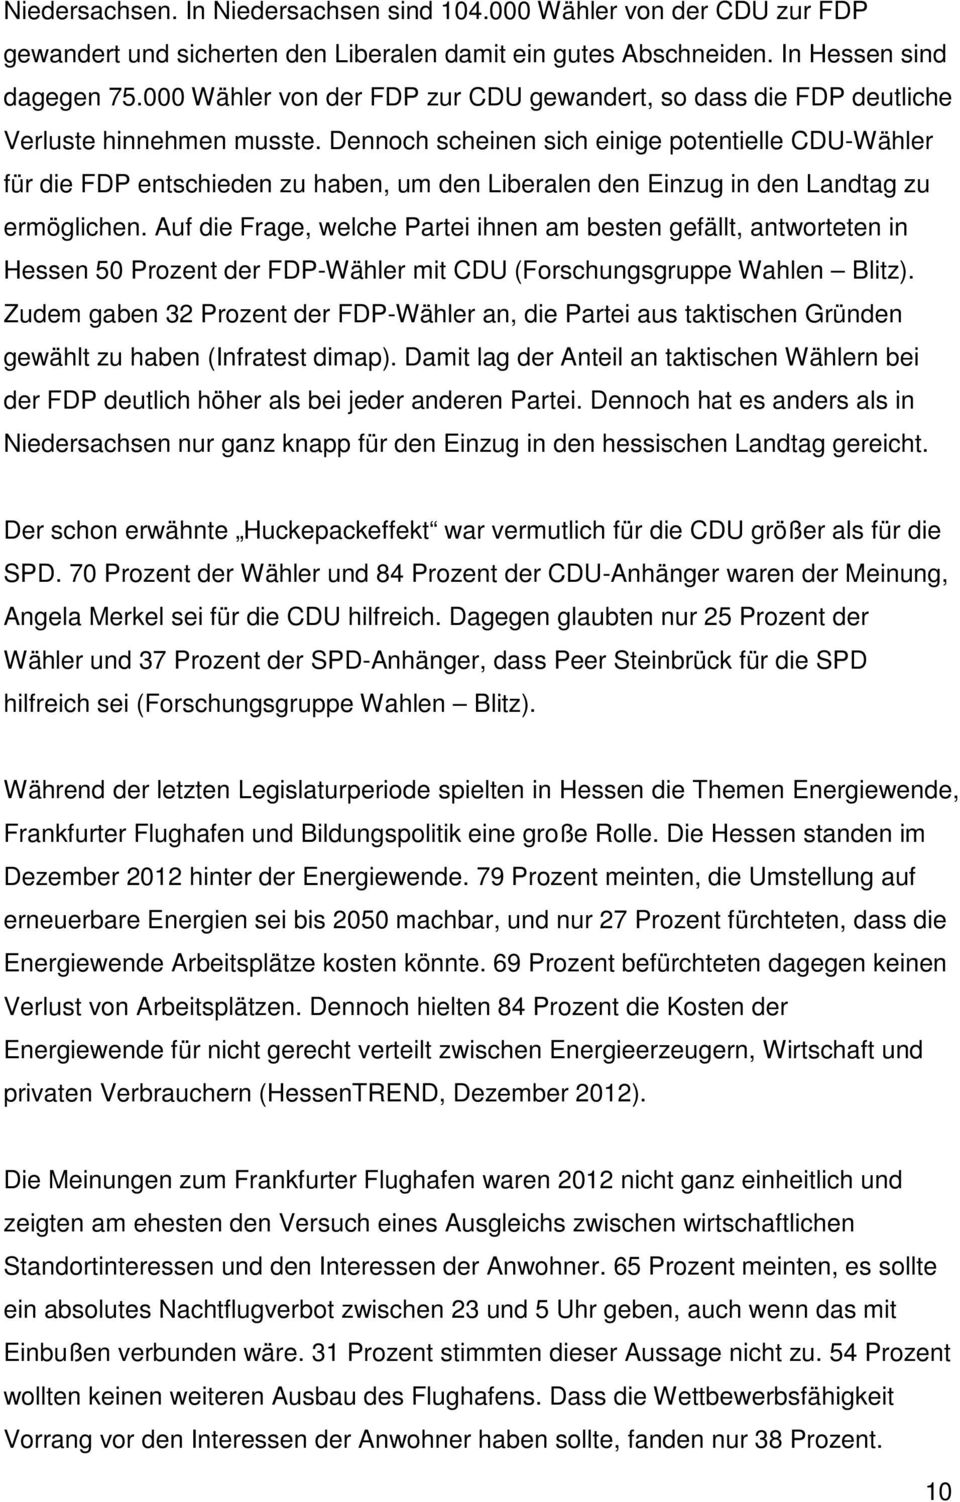 Dennoch scheinen sich einige potentielle CDU-Wähler für die FDP entschieden zu haben, um den Liberalen den Einzug in den Landtag zu ermöglichen.